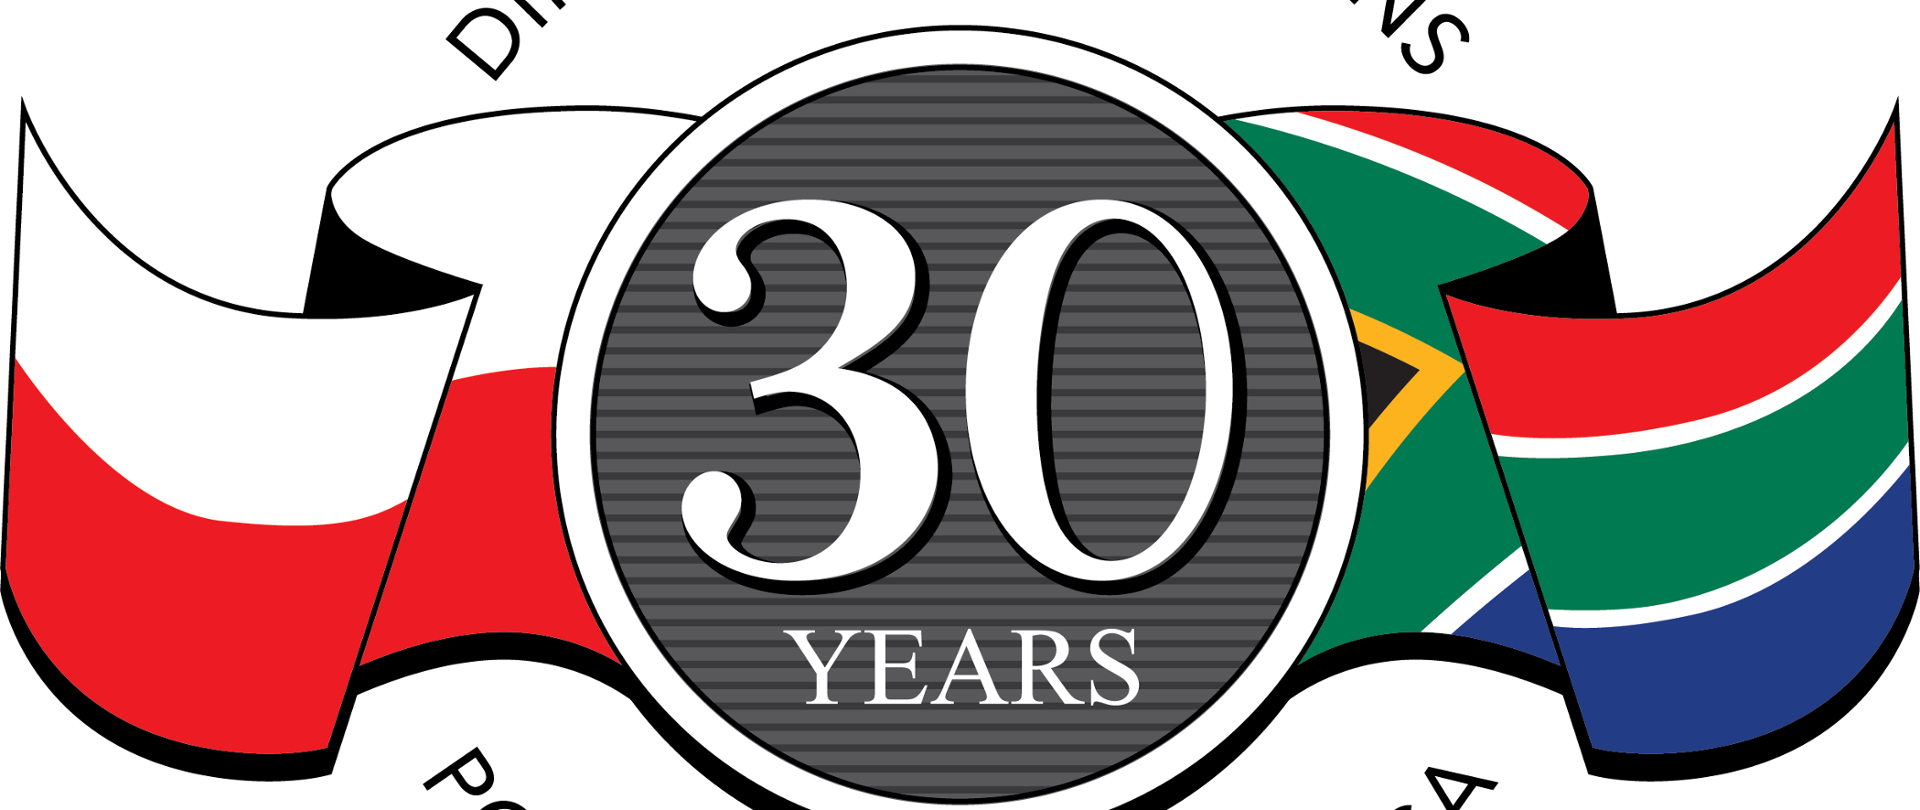 30. rocznica nawiązania stosunków dyplomatycznych Polska RPA